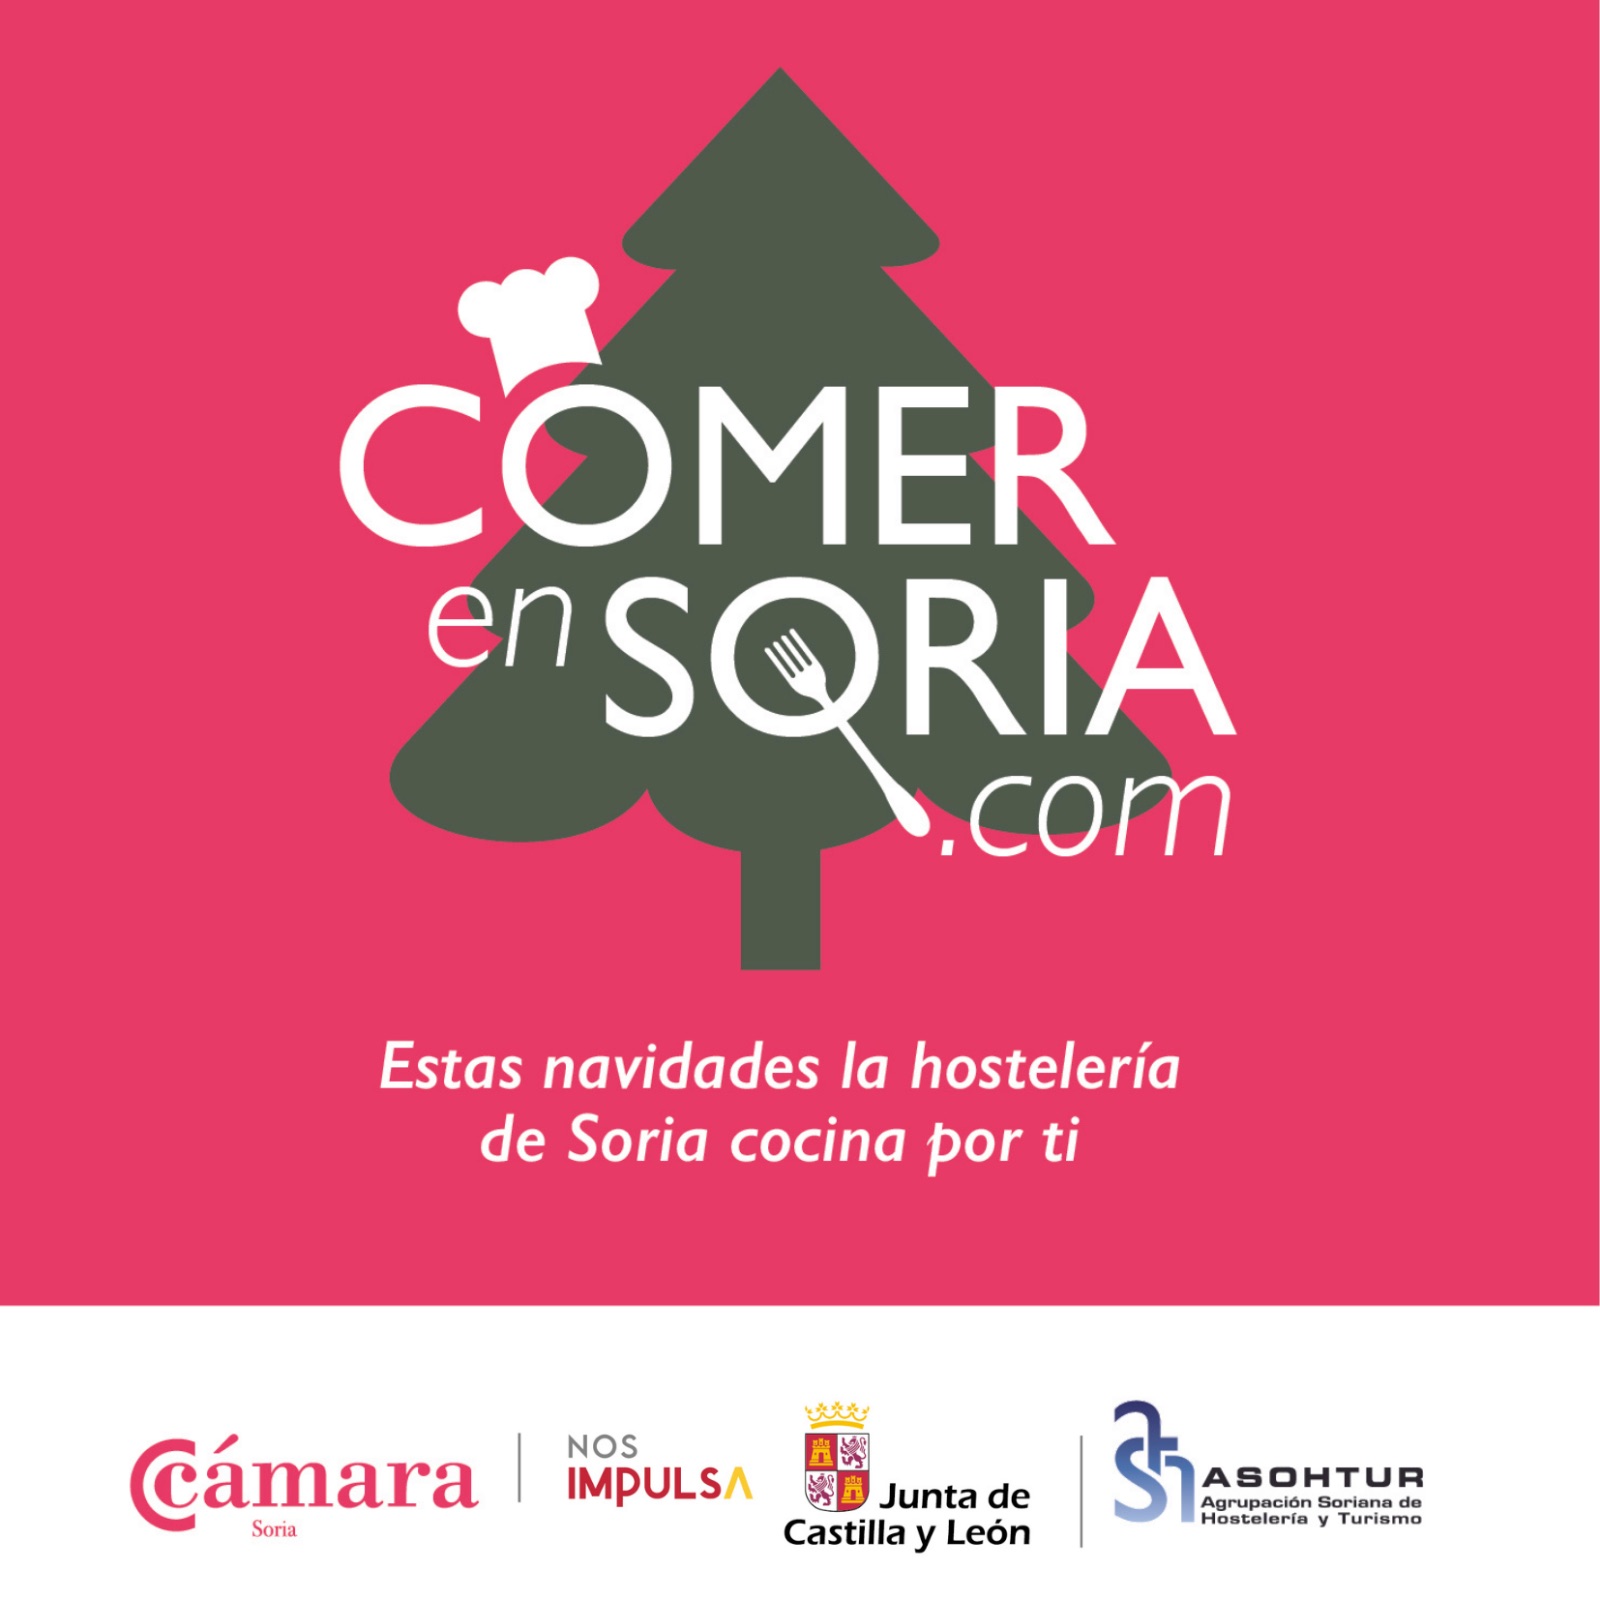 La Cámara recuerda que Comer en Soria recoge la oferta de la hostelería soriana con servicio a domicilio